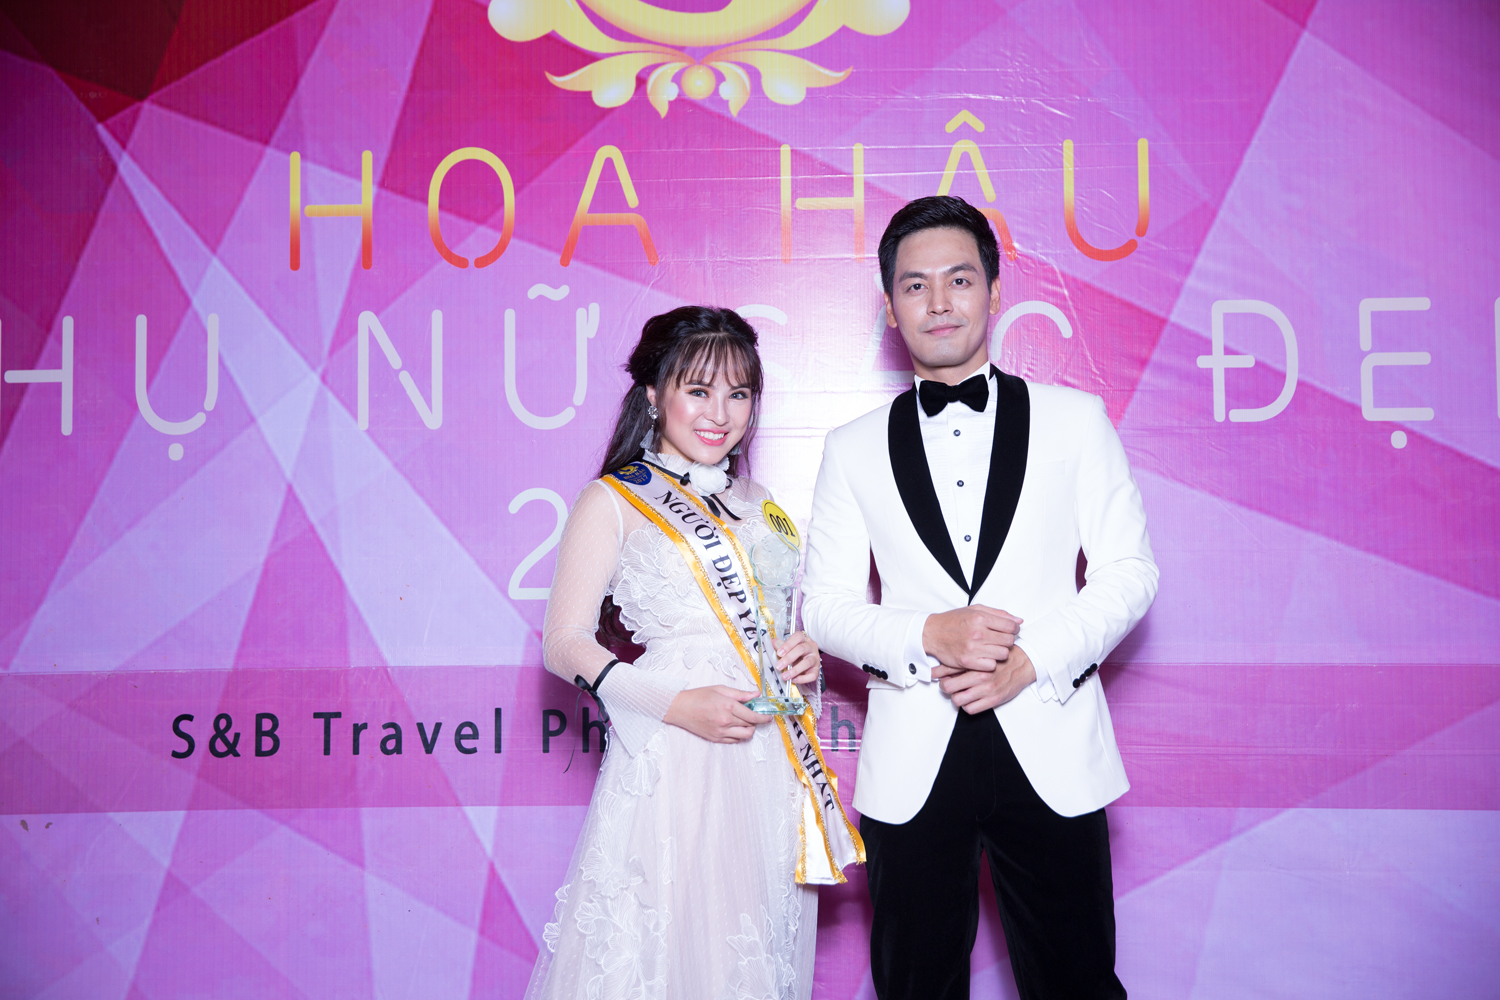 Thảo Hiền đã giành giải thưởng tại cuộc thi Hoa hậu Phụ nữ Sắc đẹp 2017